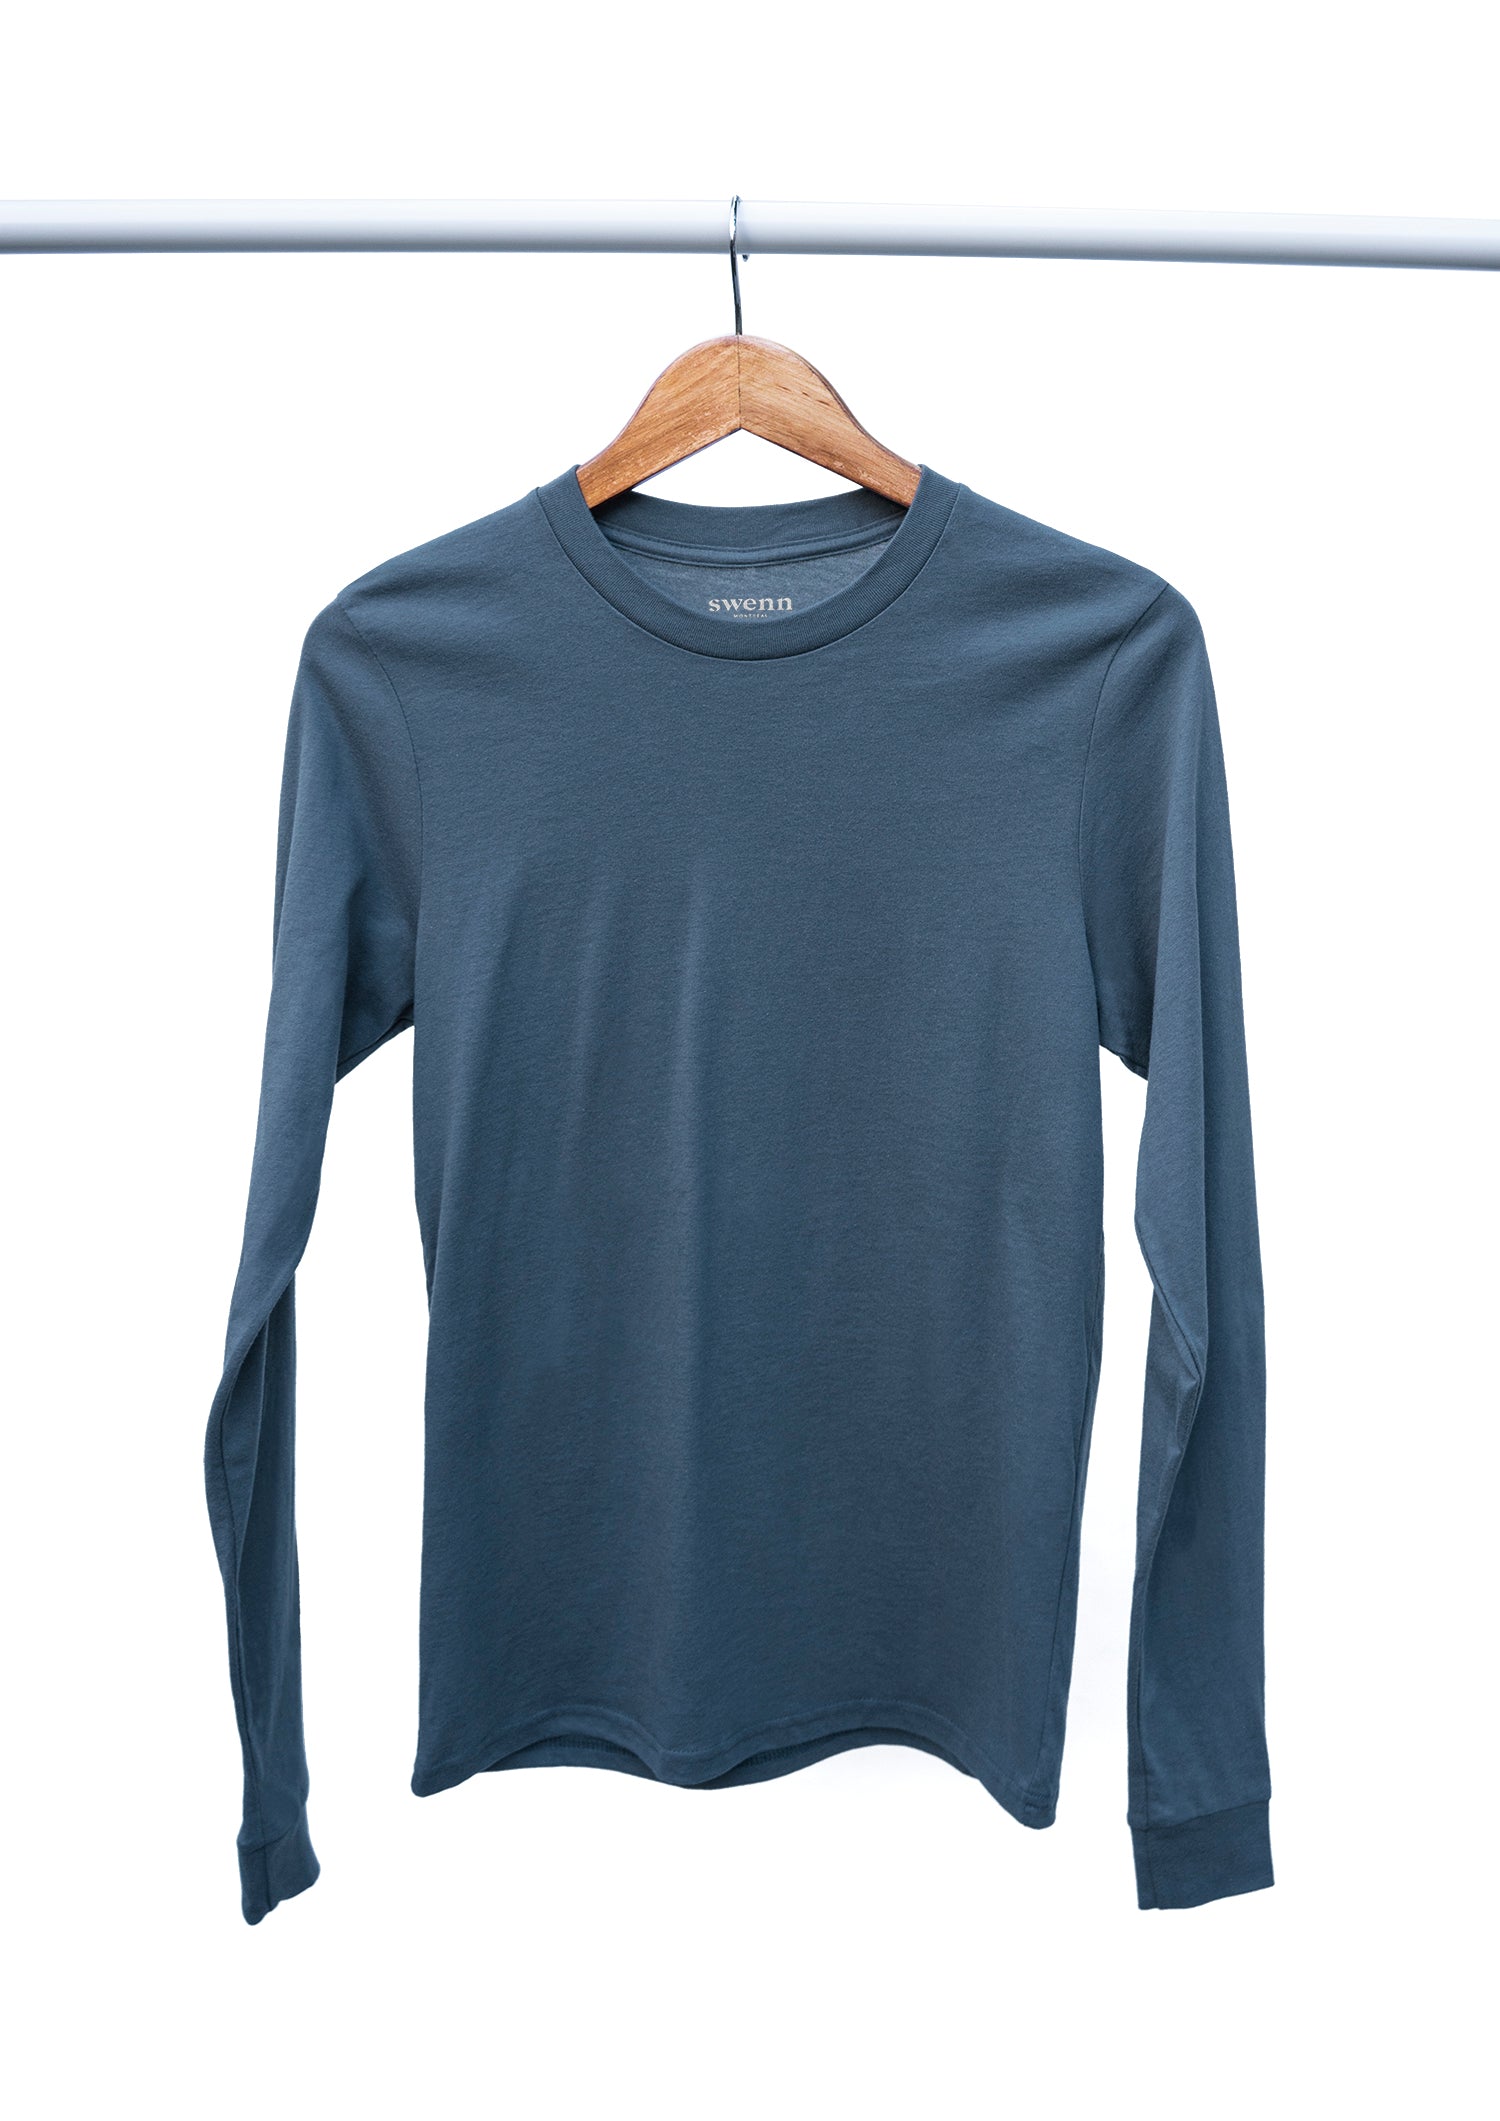 SWENN - Photos - T-shirt biologique - bleu pacifique